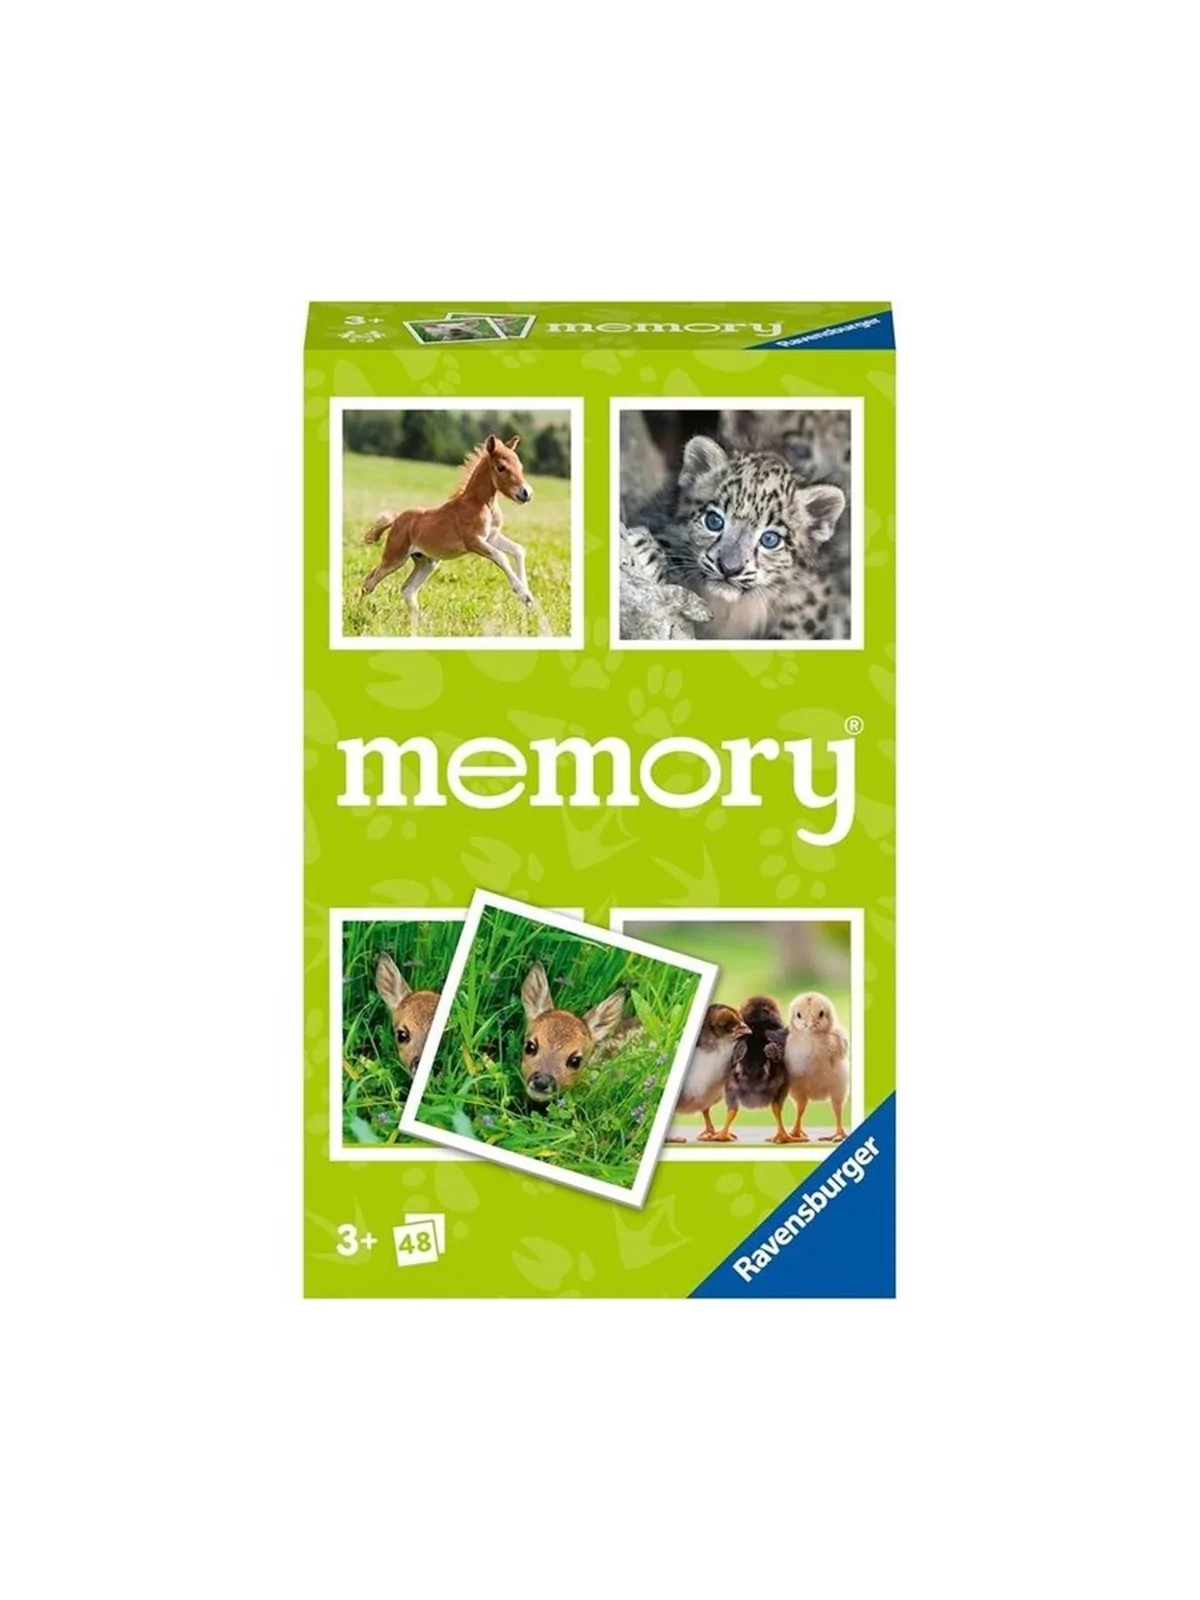 Comprar Memory Animal Baby barato al mejor precio 7,64 € de Ravensburg